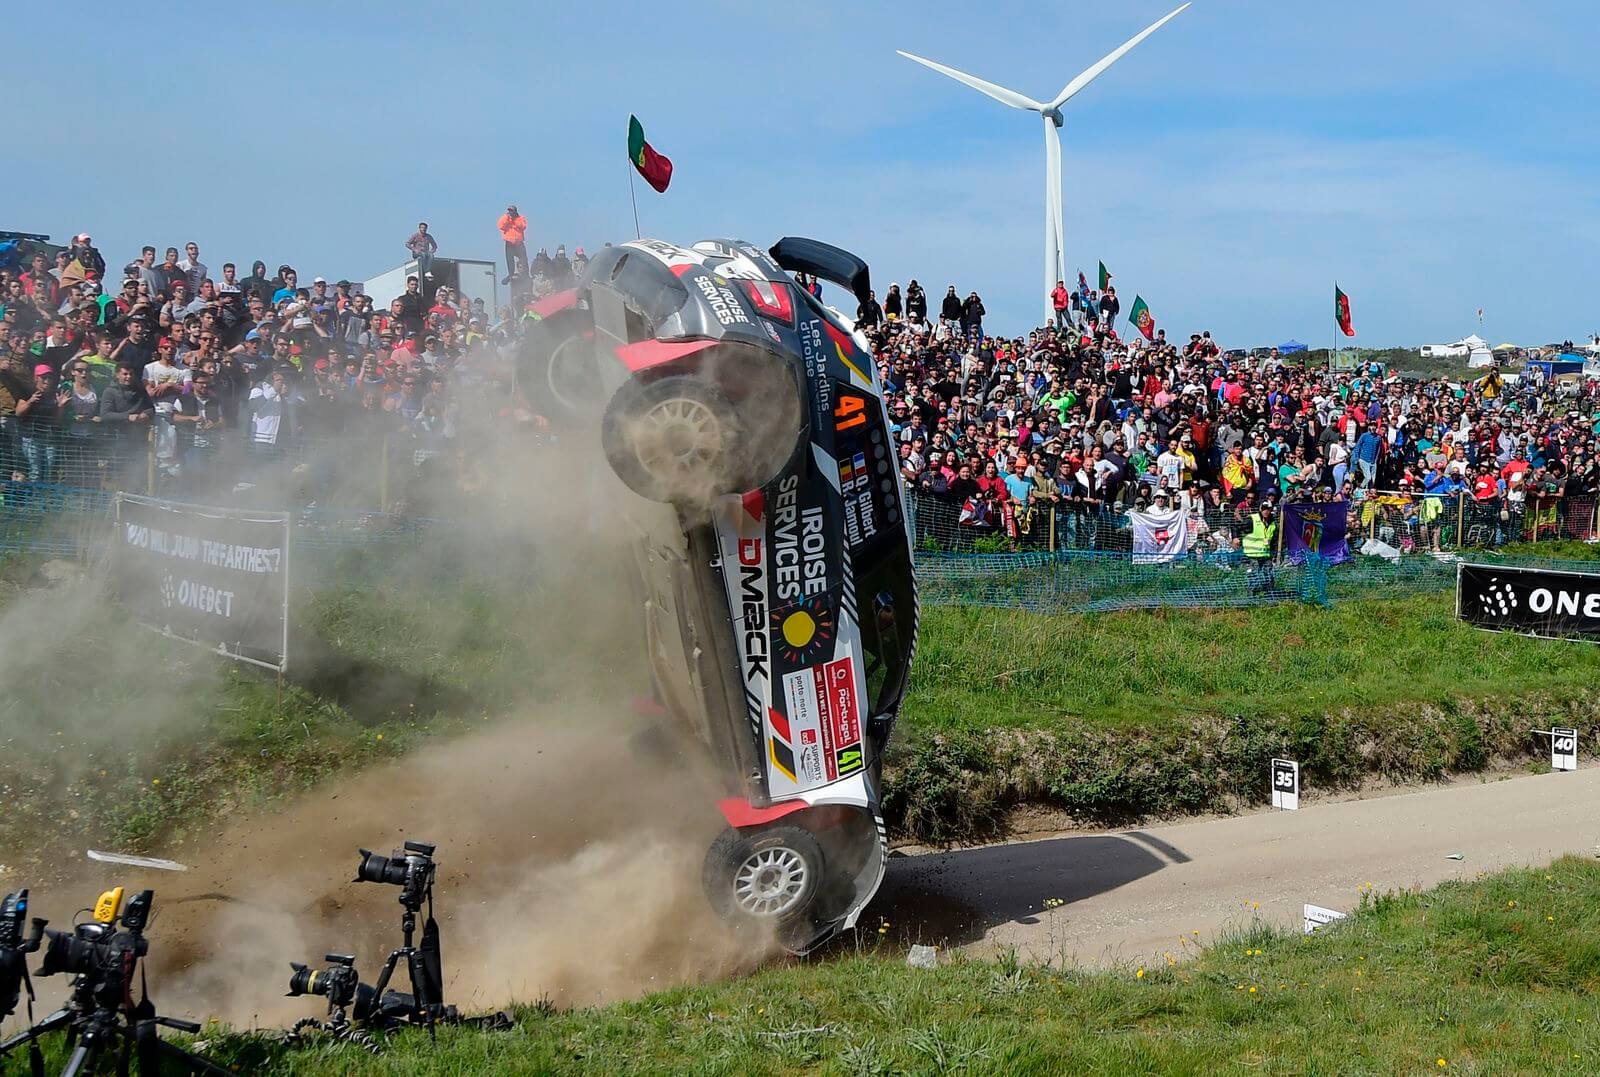 Xe đua của Quentin Gilbert và Renaud Jamoul bị đâm trong một đường đua ở Bồ Đào Nha ngày 21/5. Không ai bị thương trong vụ tai nạn